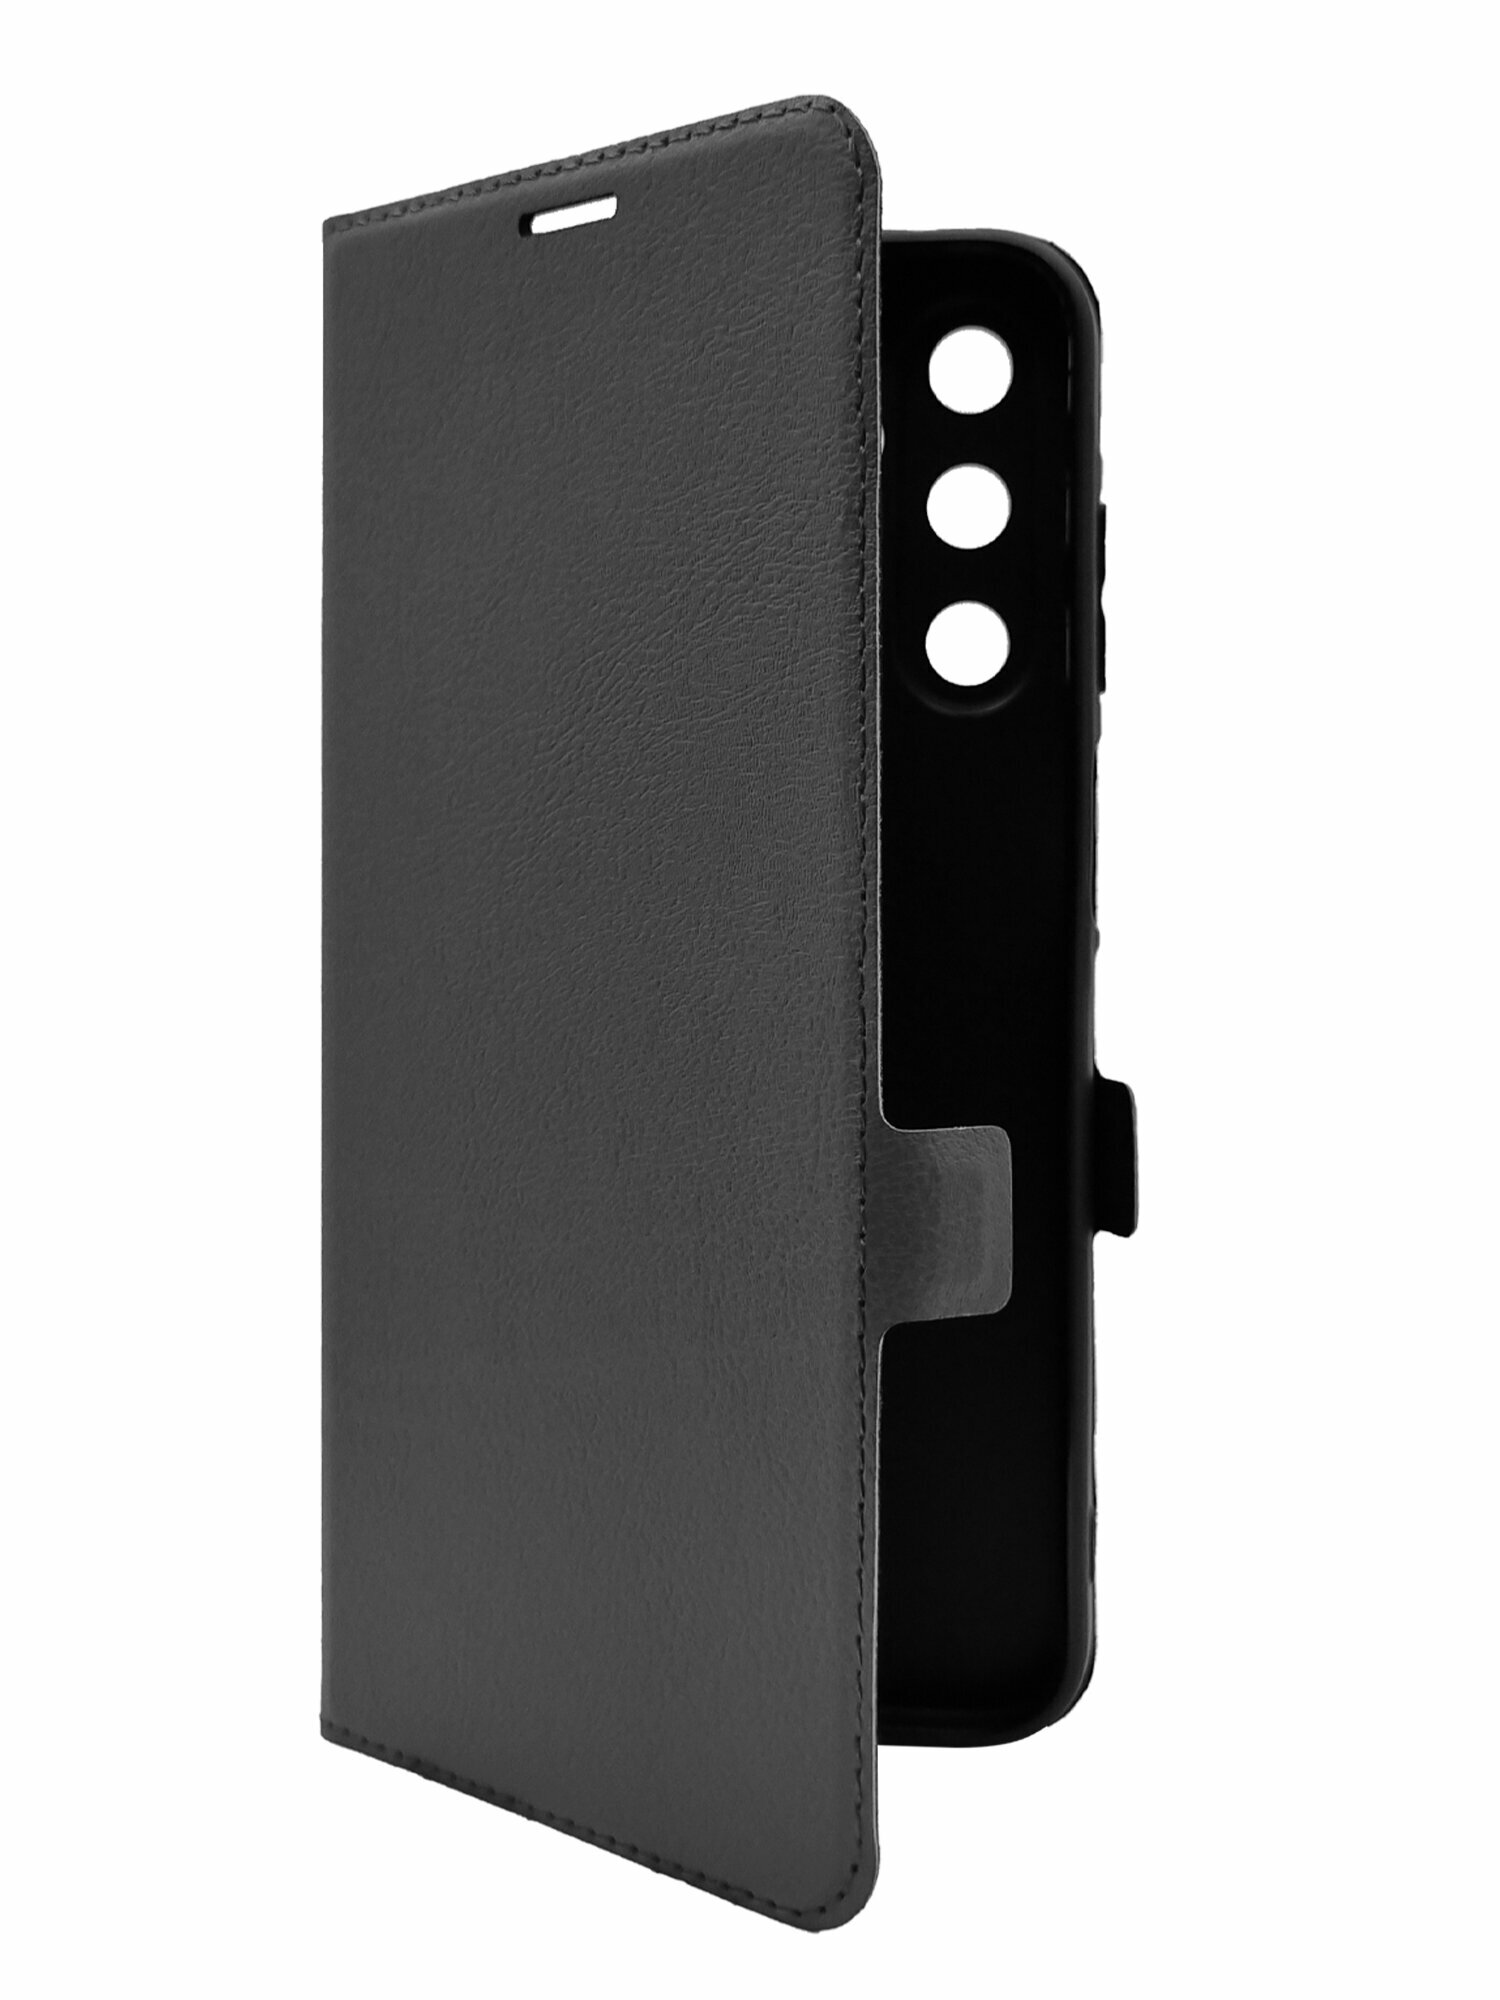 Чехол на Samsung Galaxy A15 (Самсунг Галакси А15) черный книжка эко-кожа с функцией подставки отделением для карт и магнитами Book case, Brozo